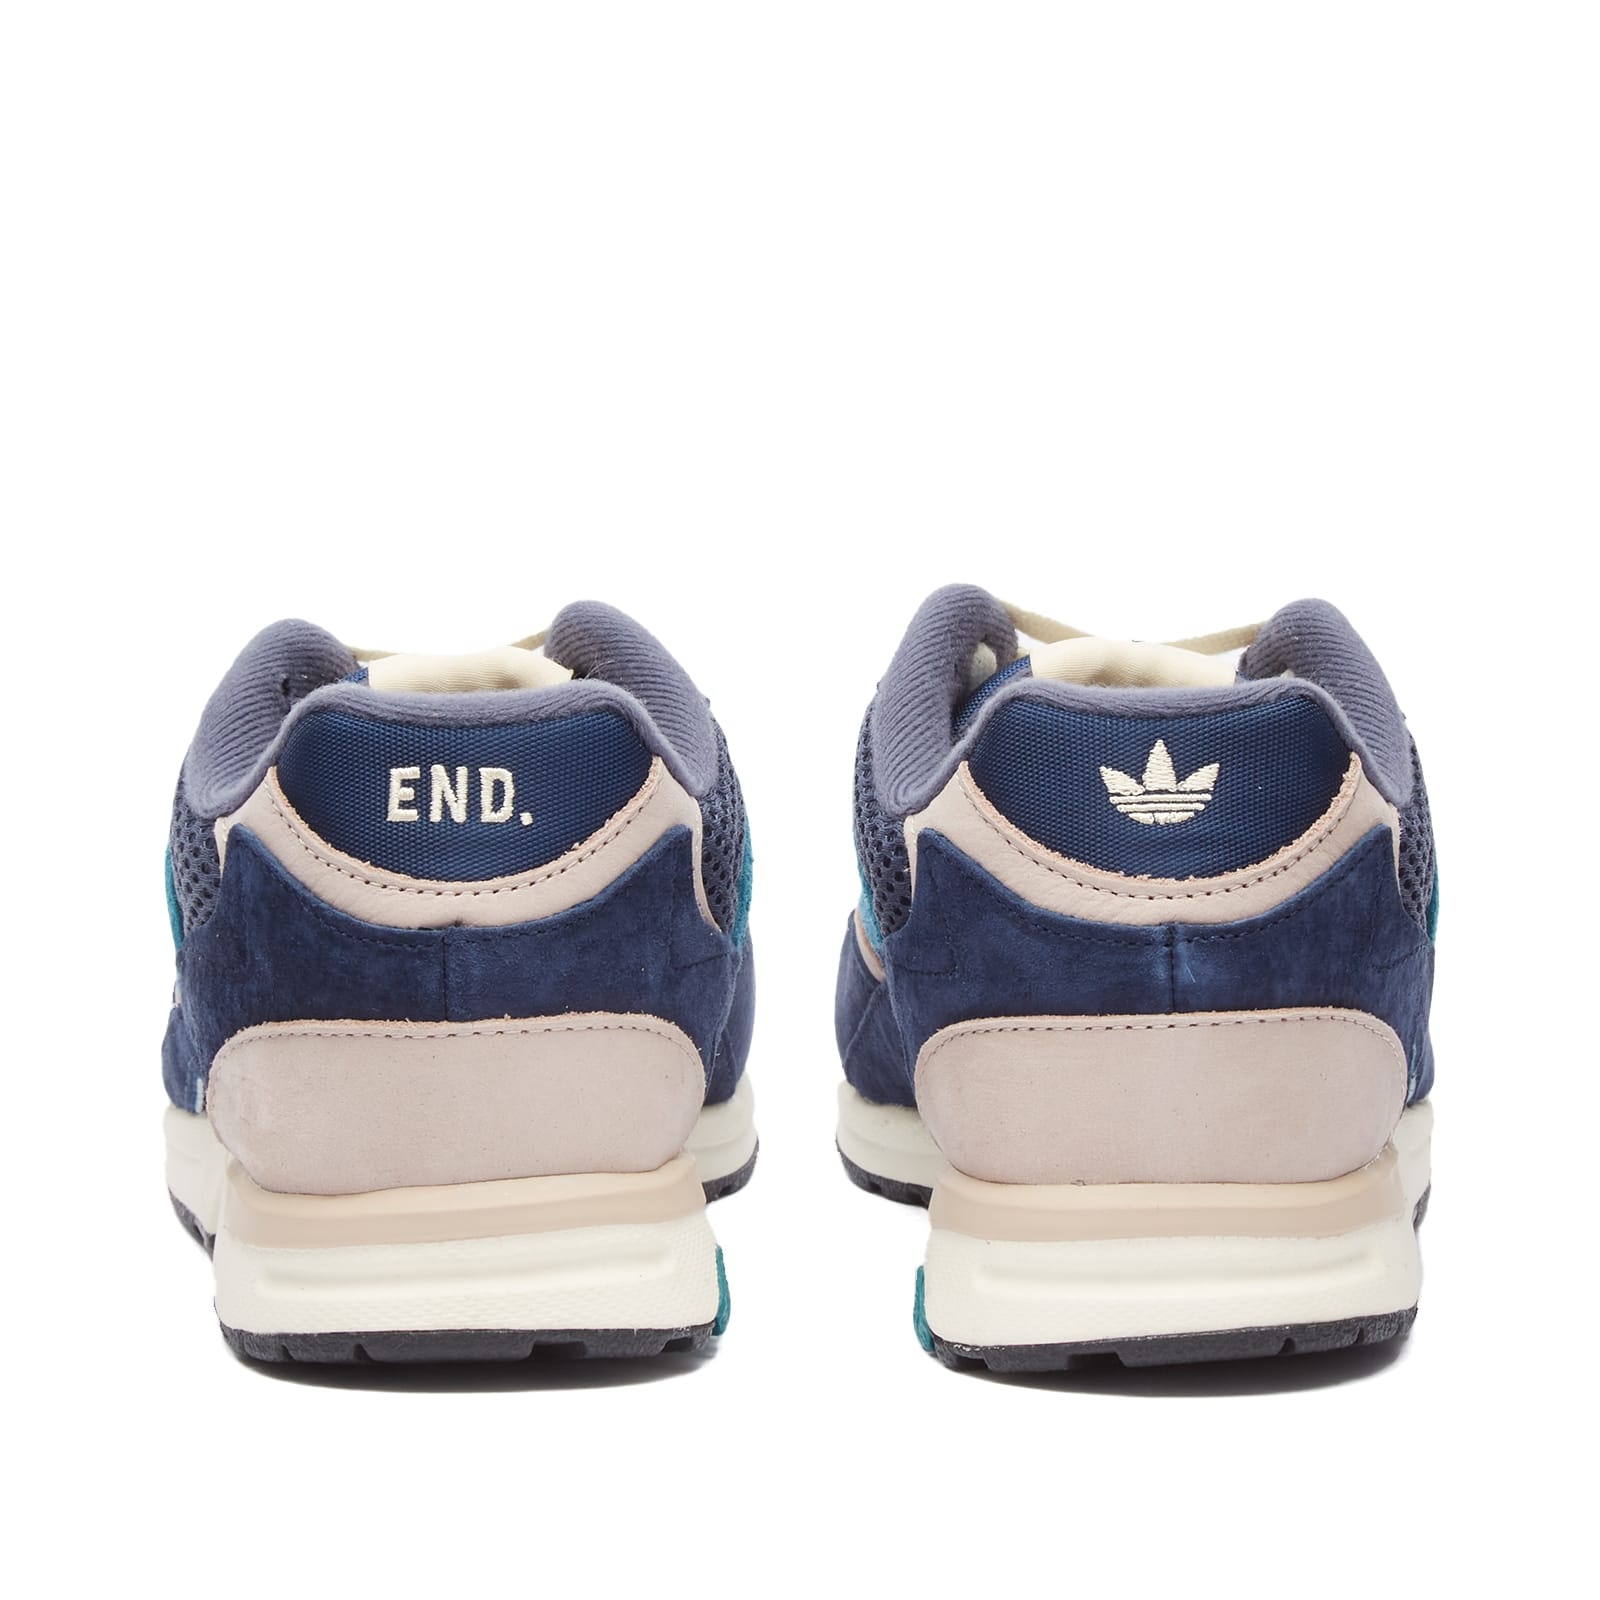 END. X Adidas Torsion Super 'Equals' - 3